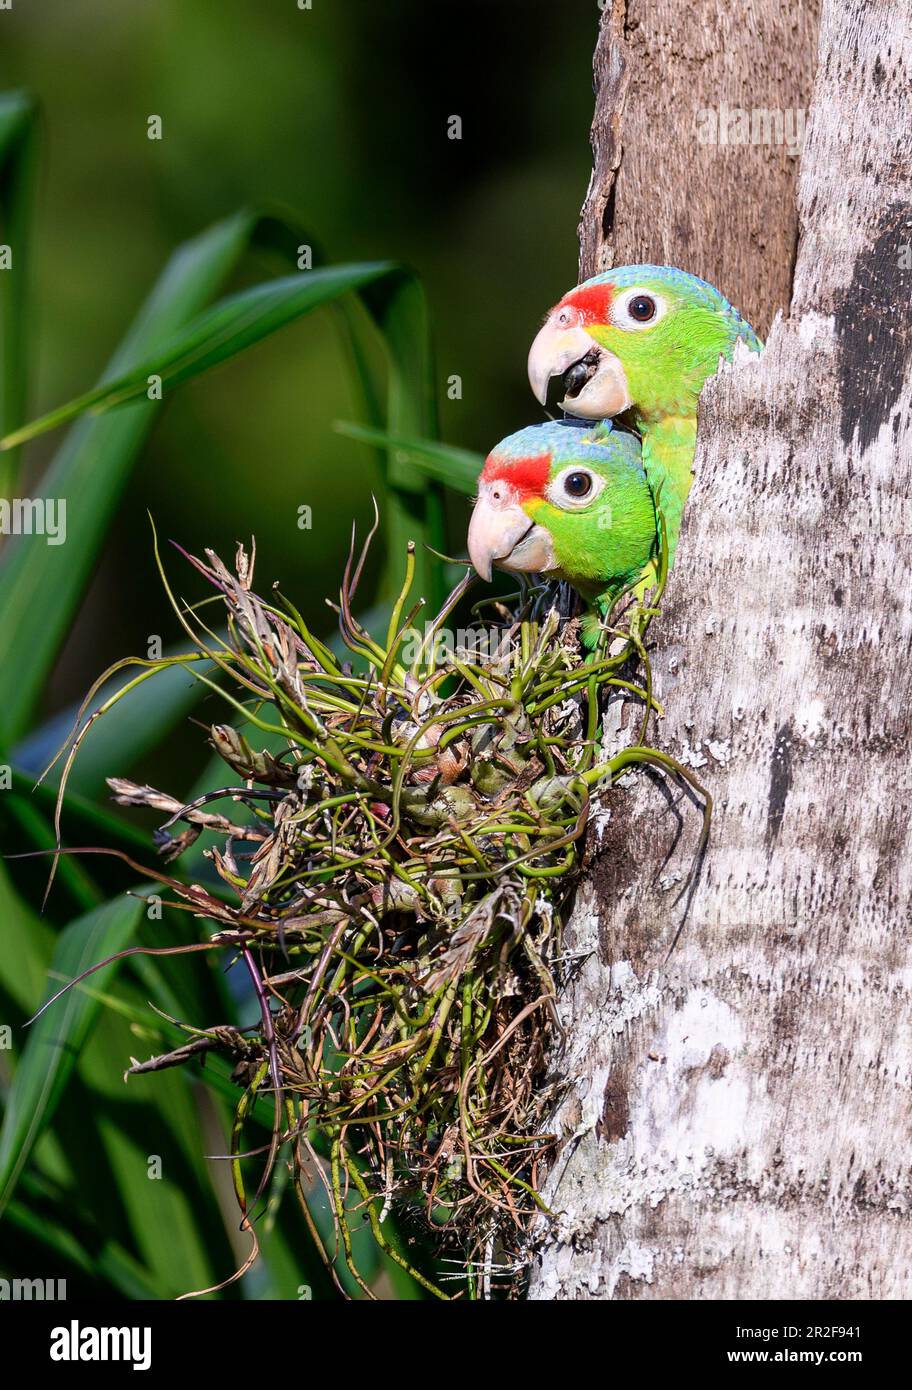 De grands poussins de perroquet rouge (Amazona autumnalis) dans leur trou de nidification. Photo de Laguna Lagarto, Costa Rica. Banque D'Images